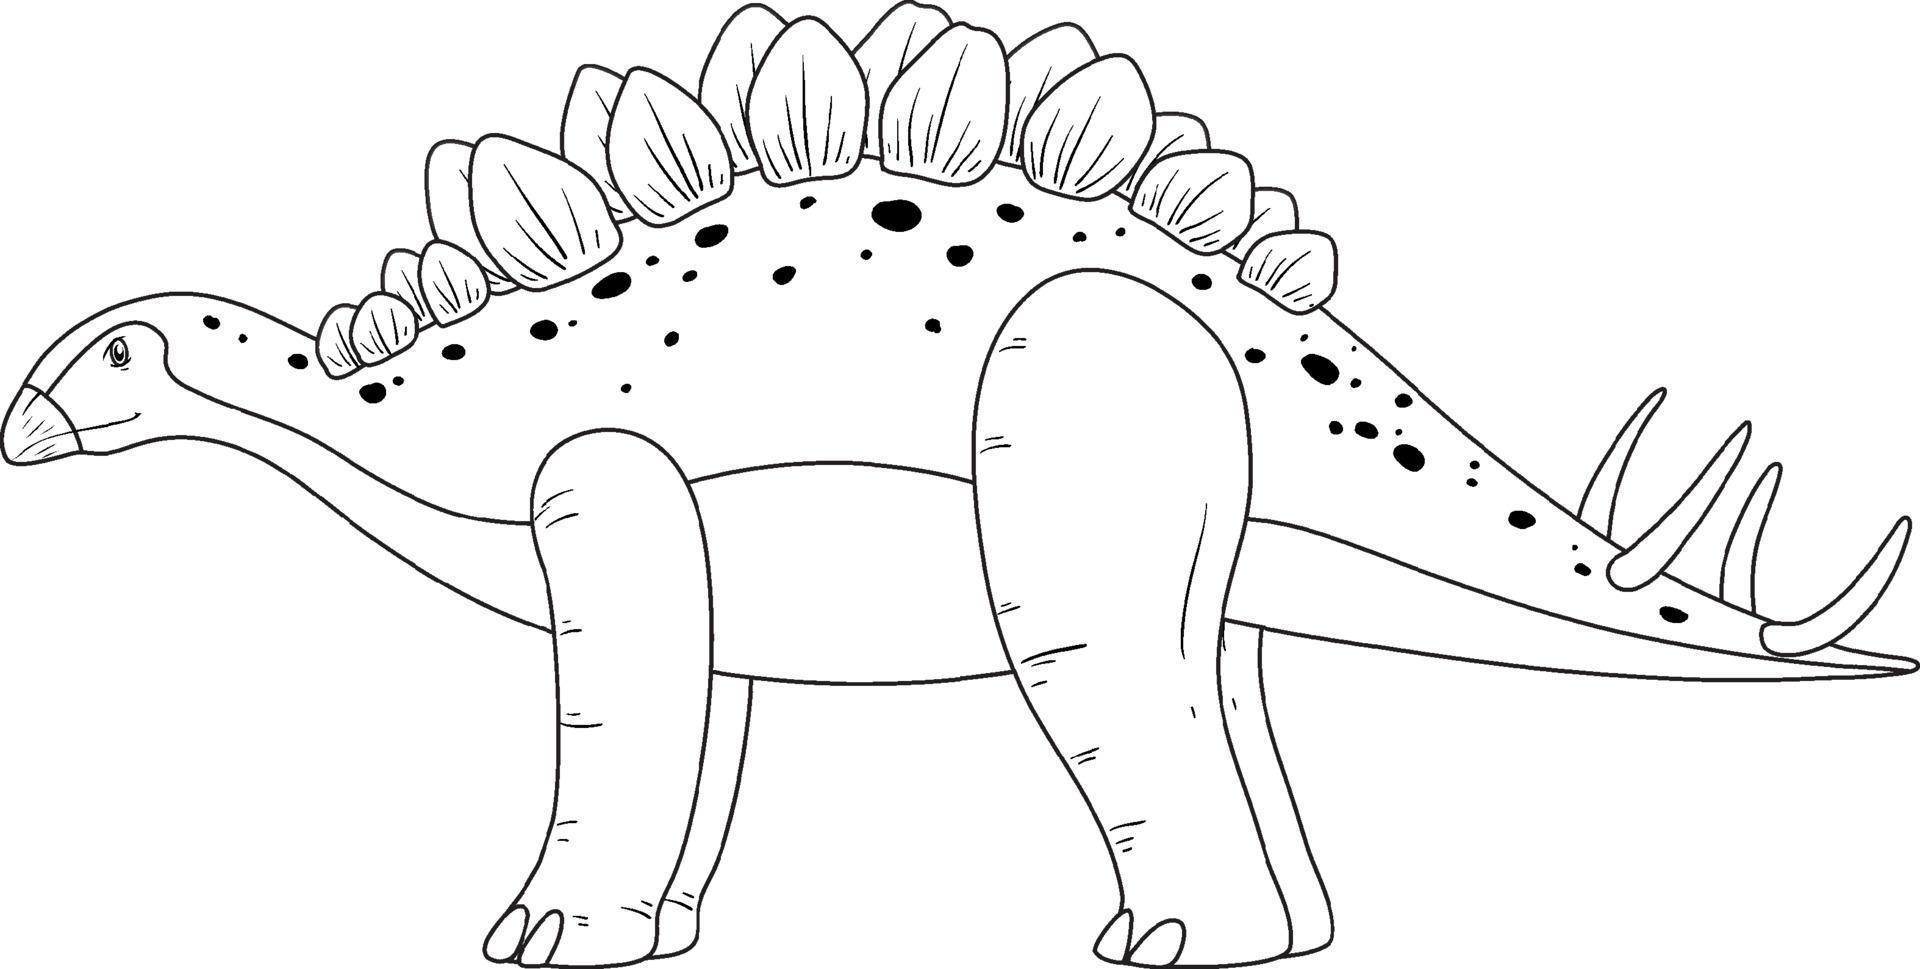 Stegosaurus dinosaur doodle outline on white background vector